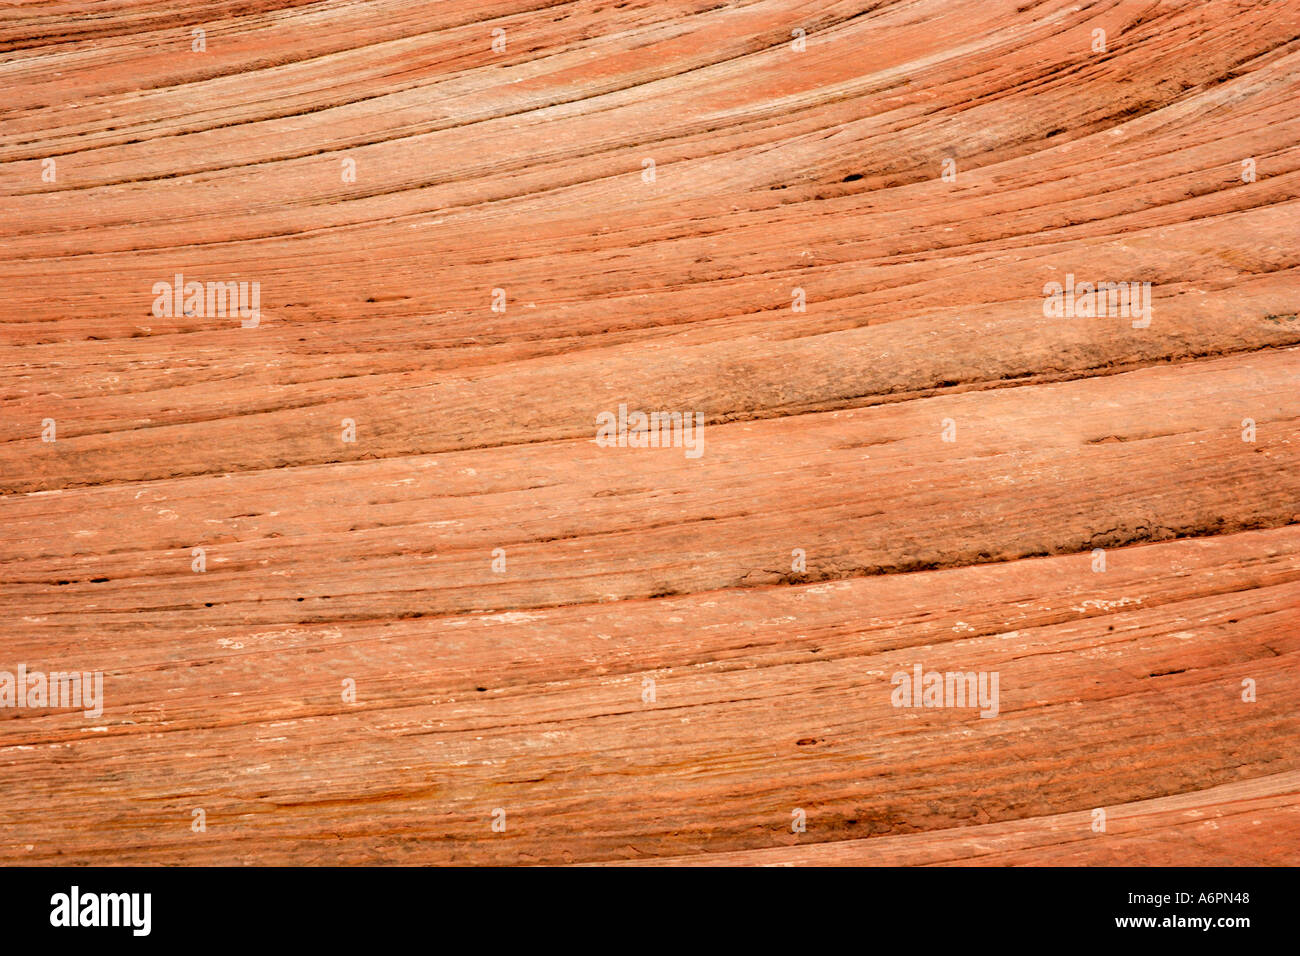 Navajo Sandstone, Zion National Park, Utah, USA Stock Photo